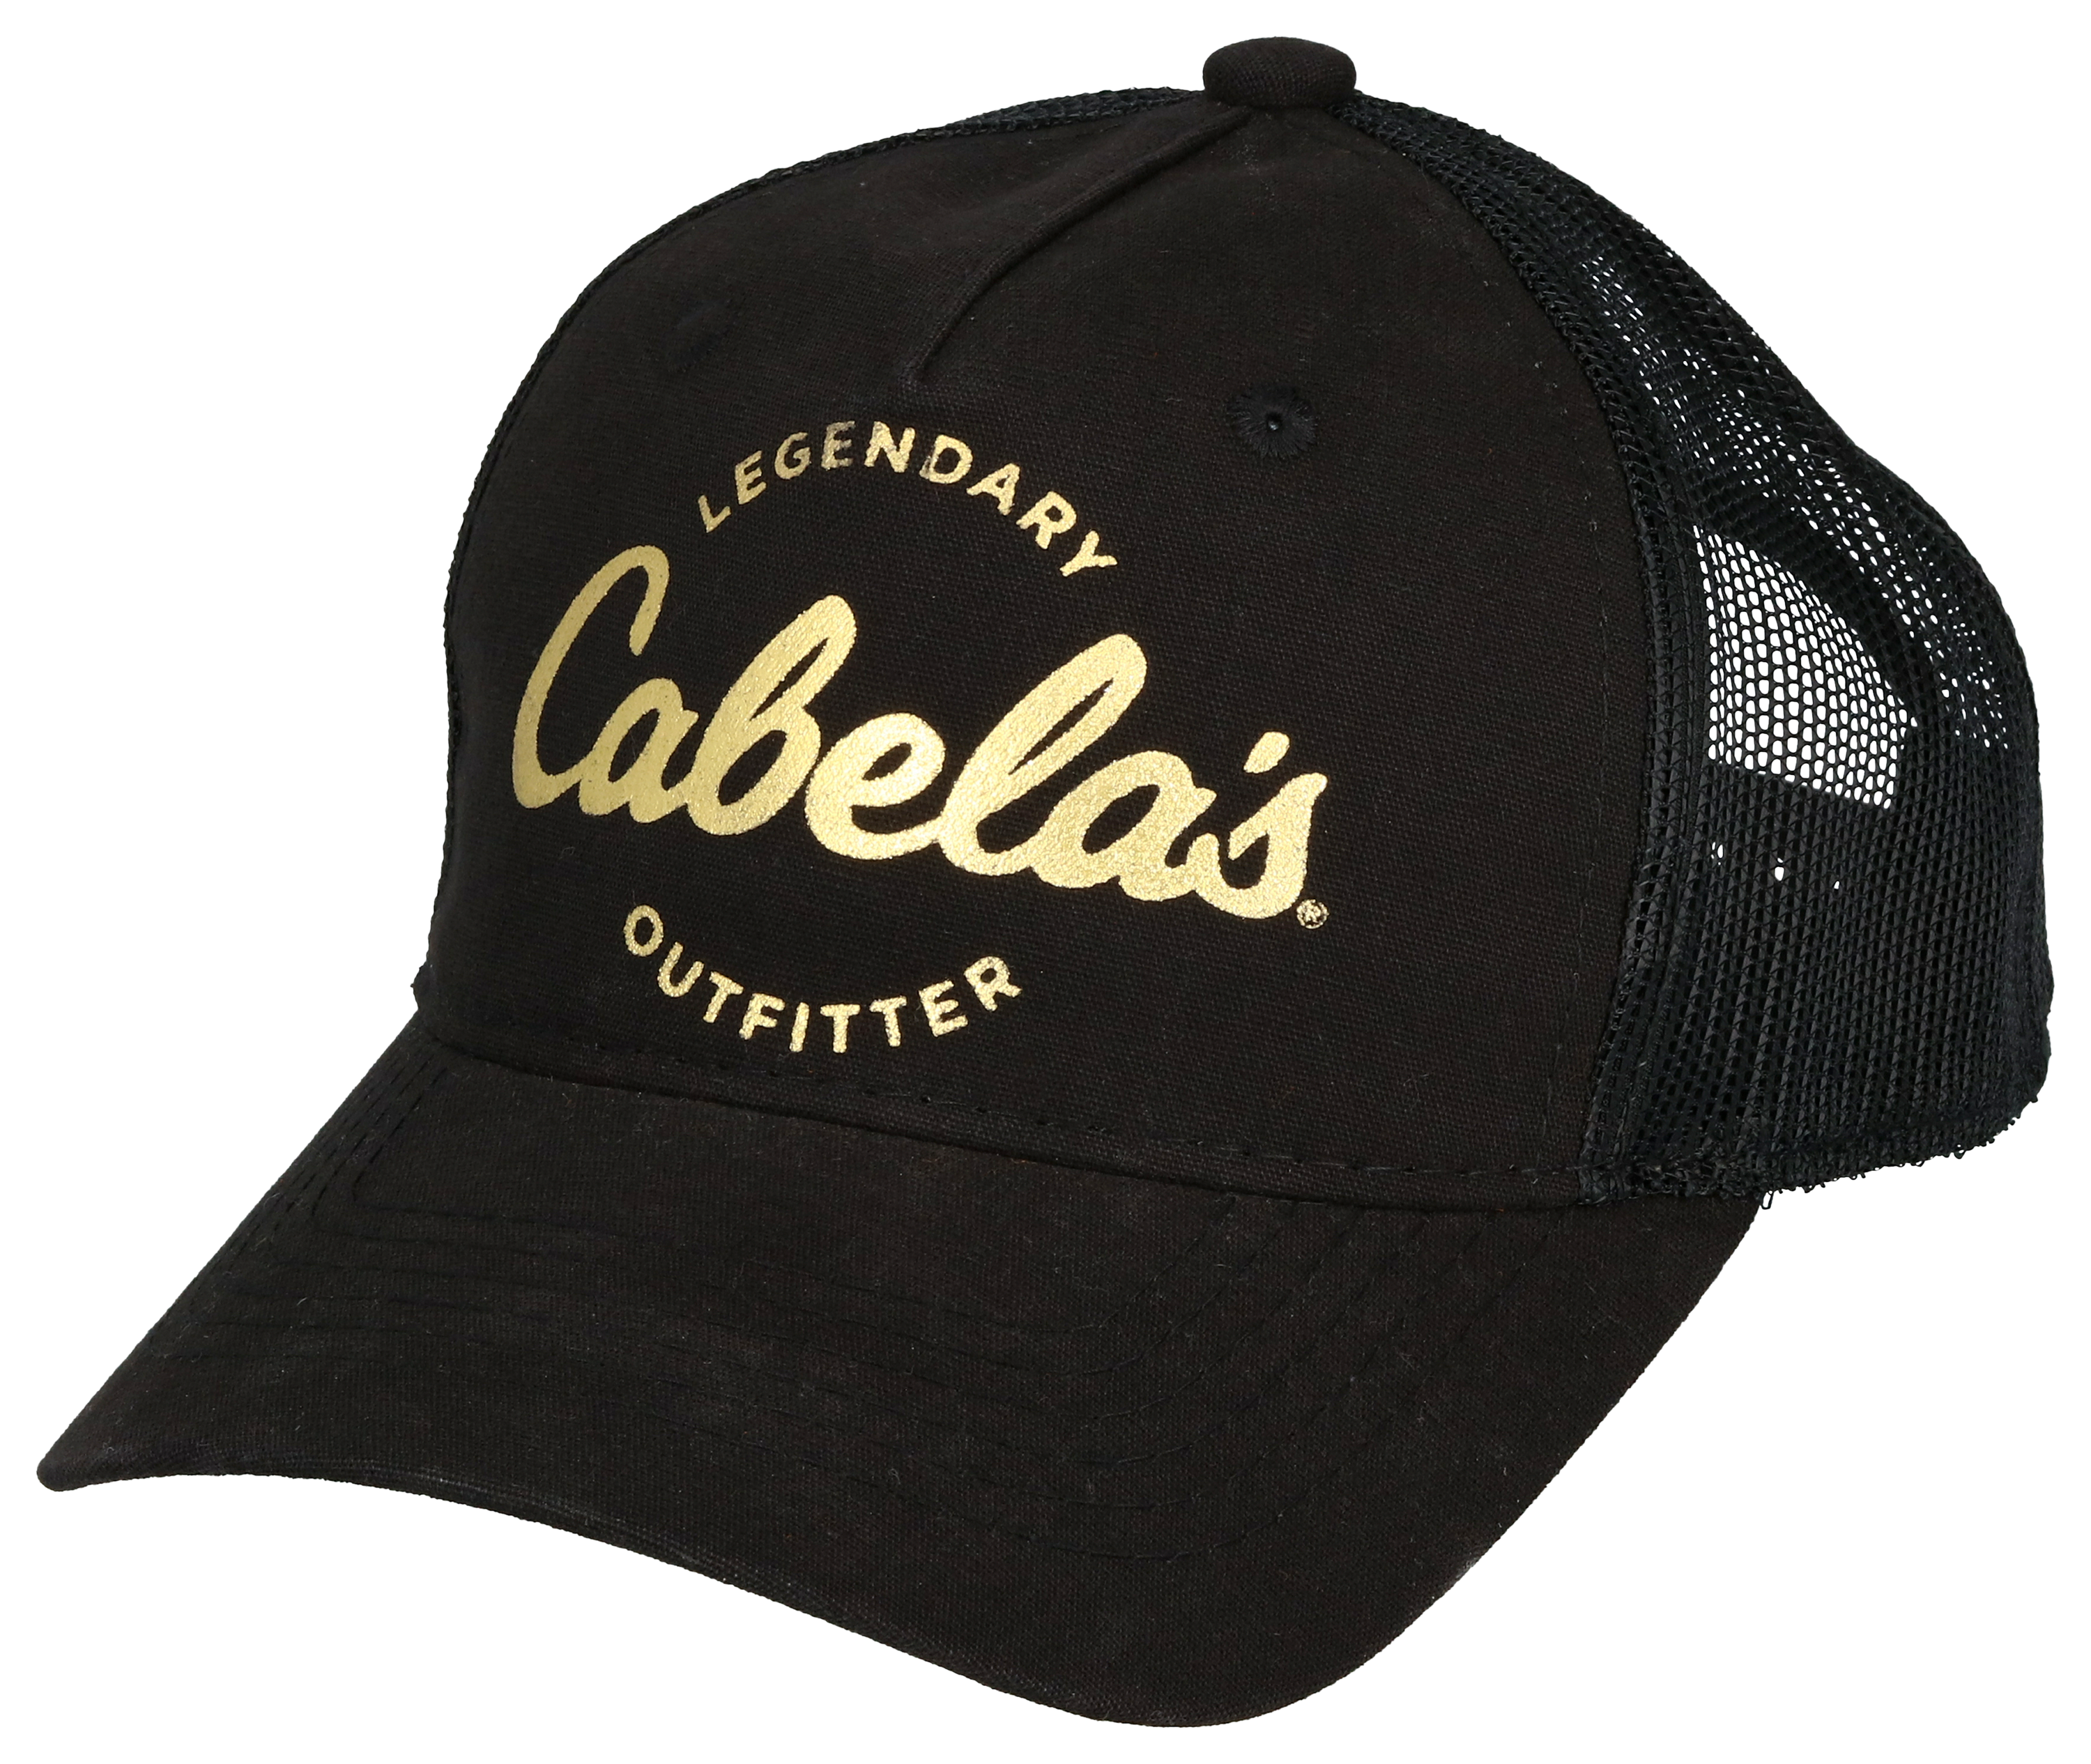 Cabela's Mesh Snapback Cap for Ladies